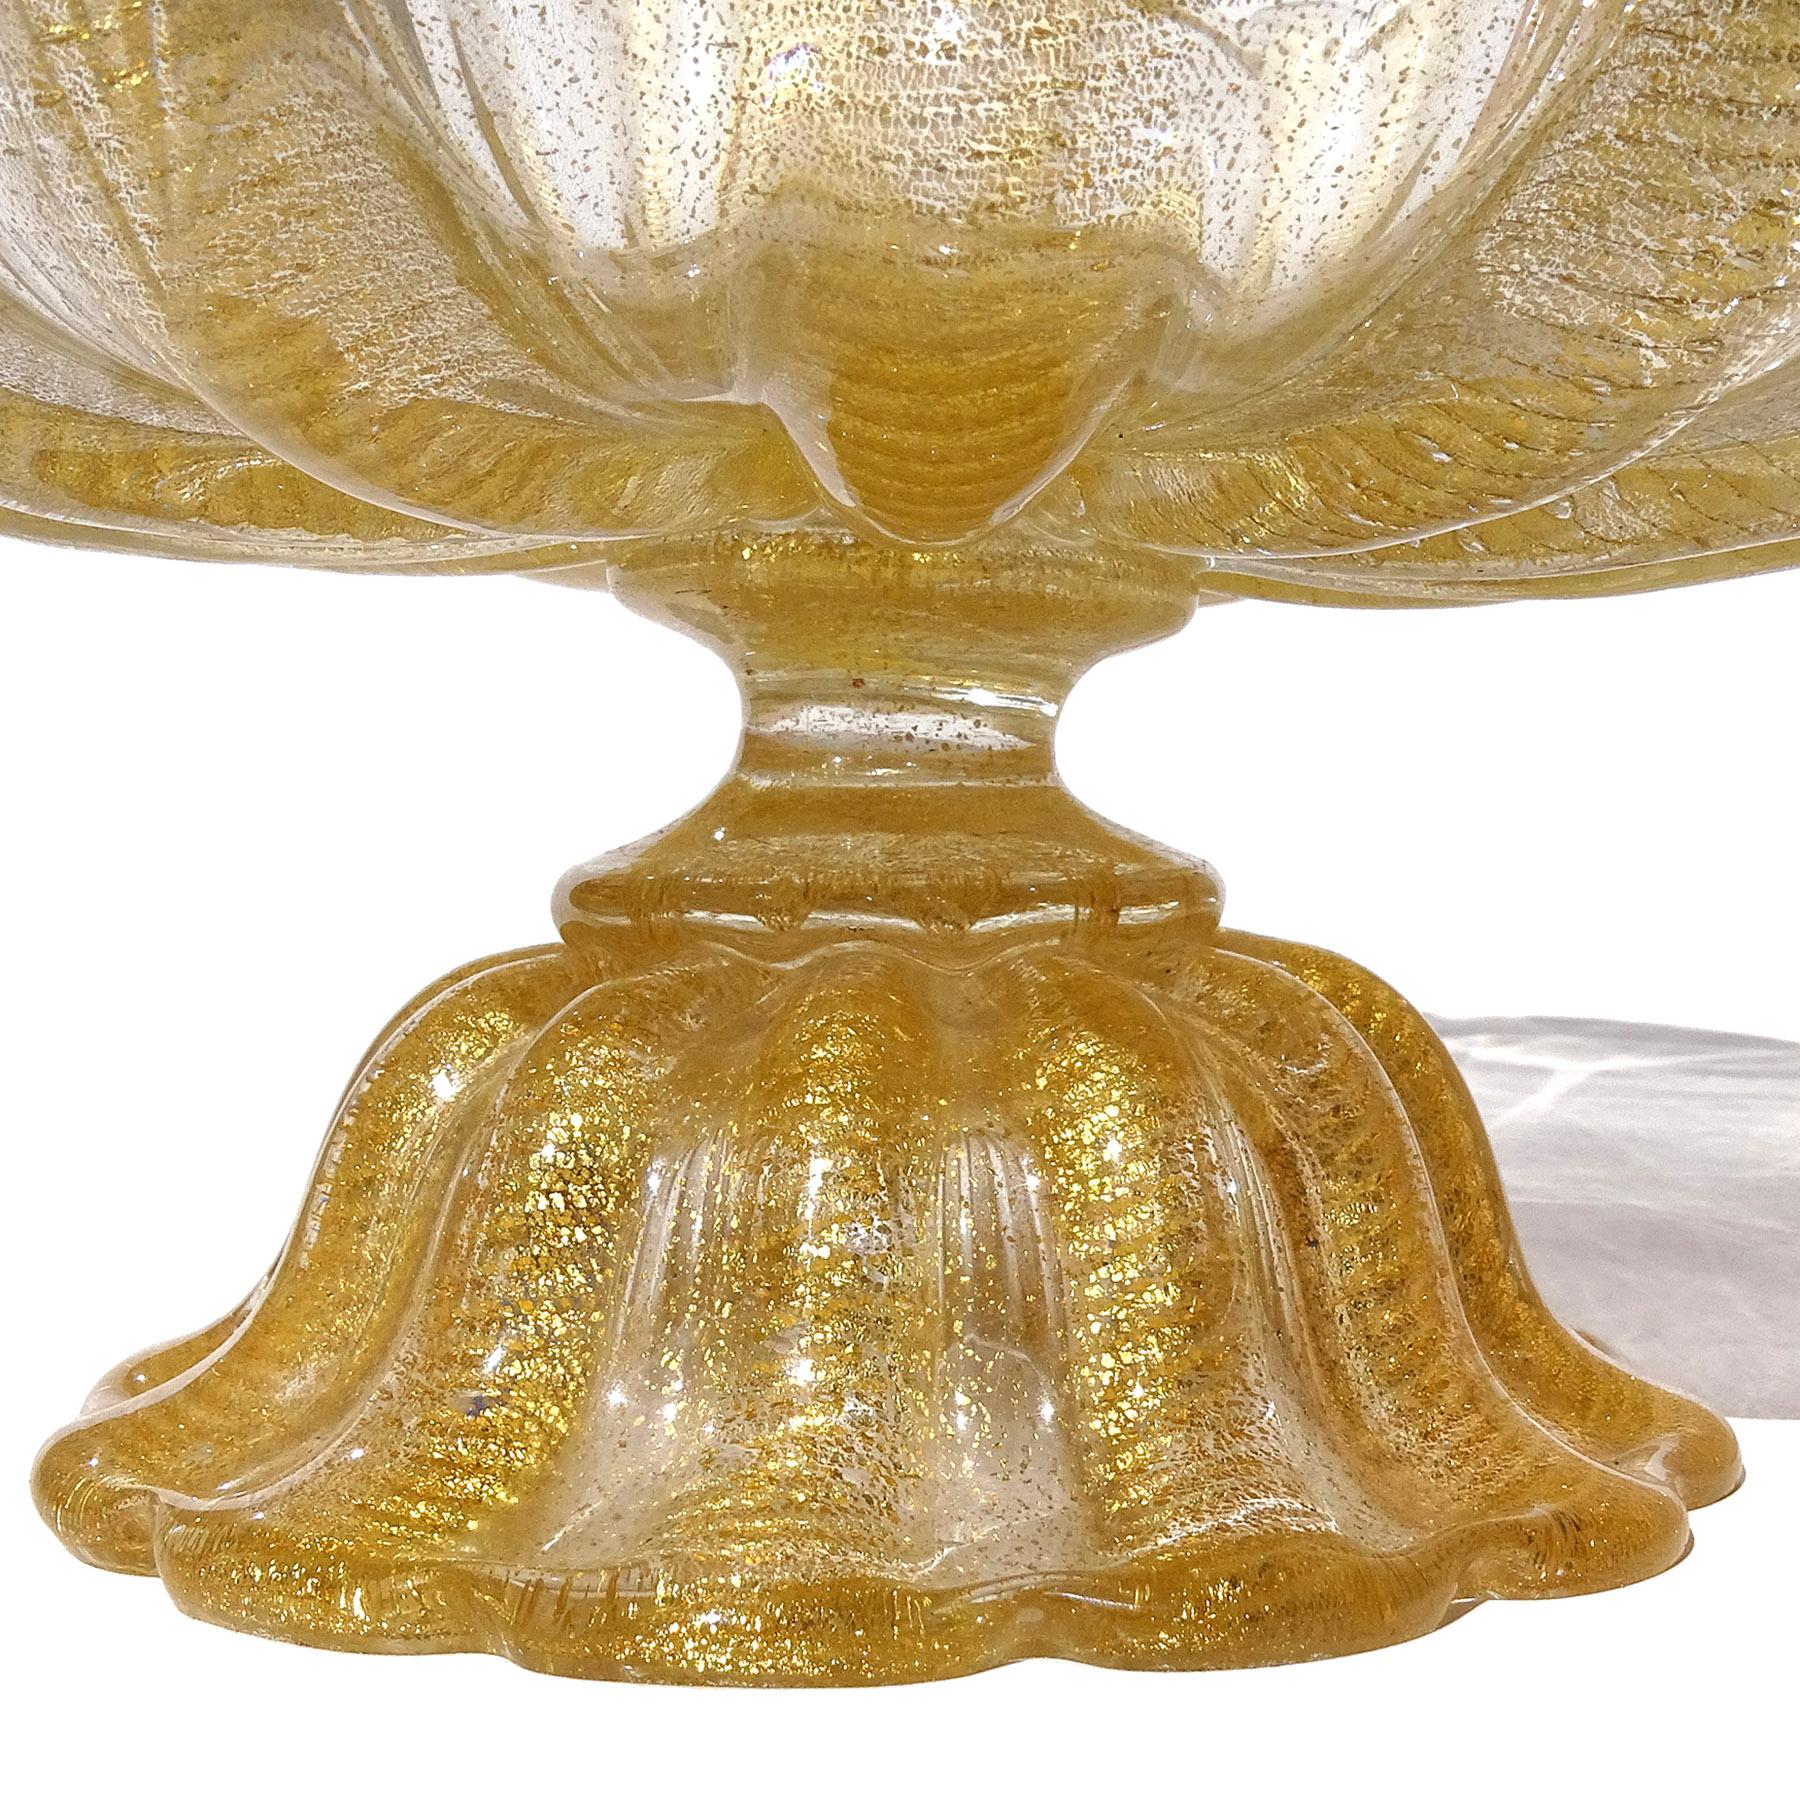 Barovier Toso Murano - Grand bol de centre de table sur pied en verre d'art italien avec mouchetures dorées 2